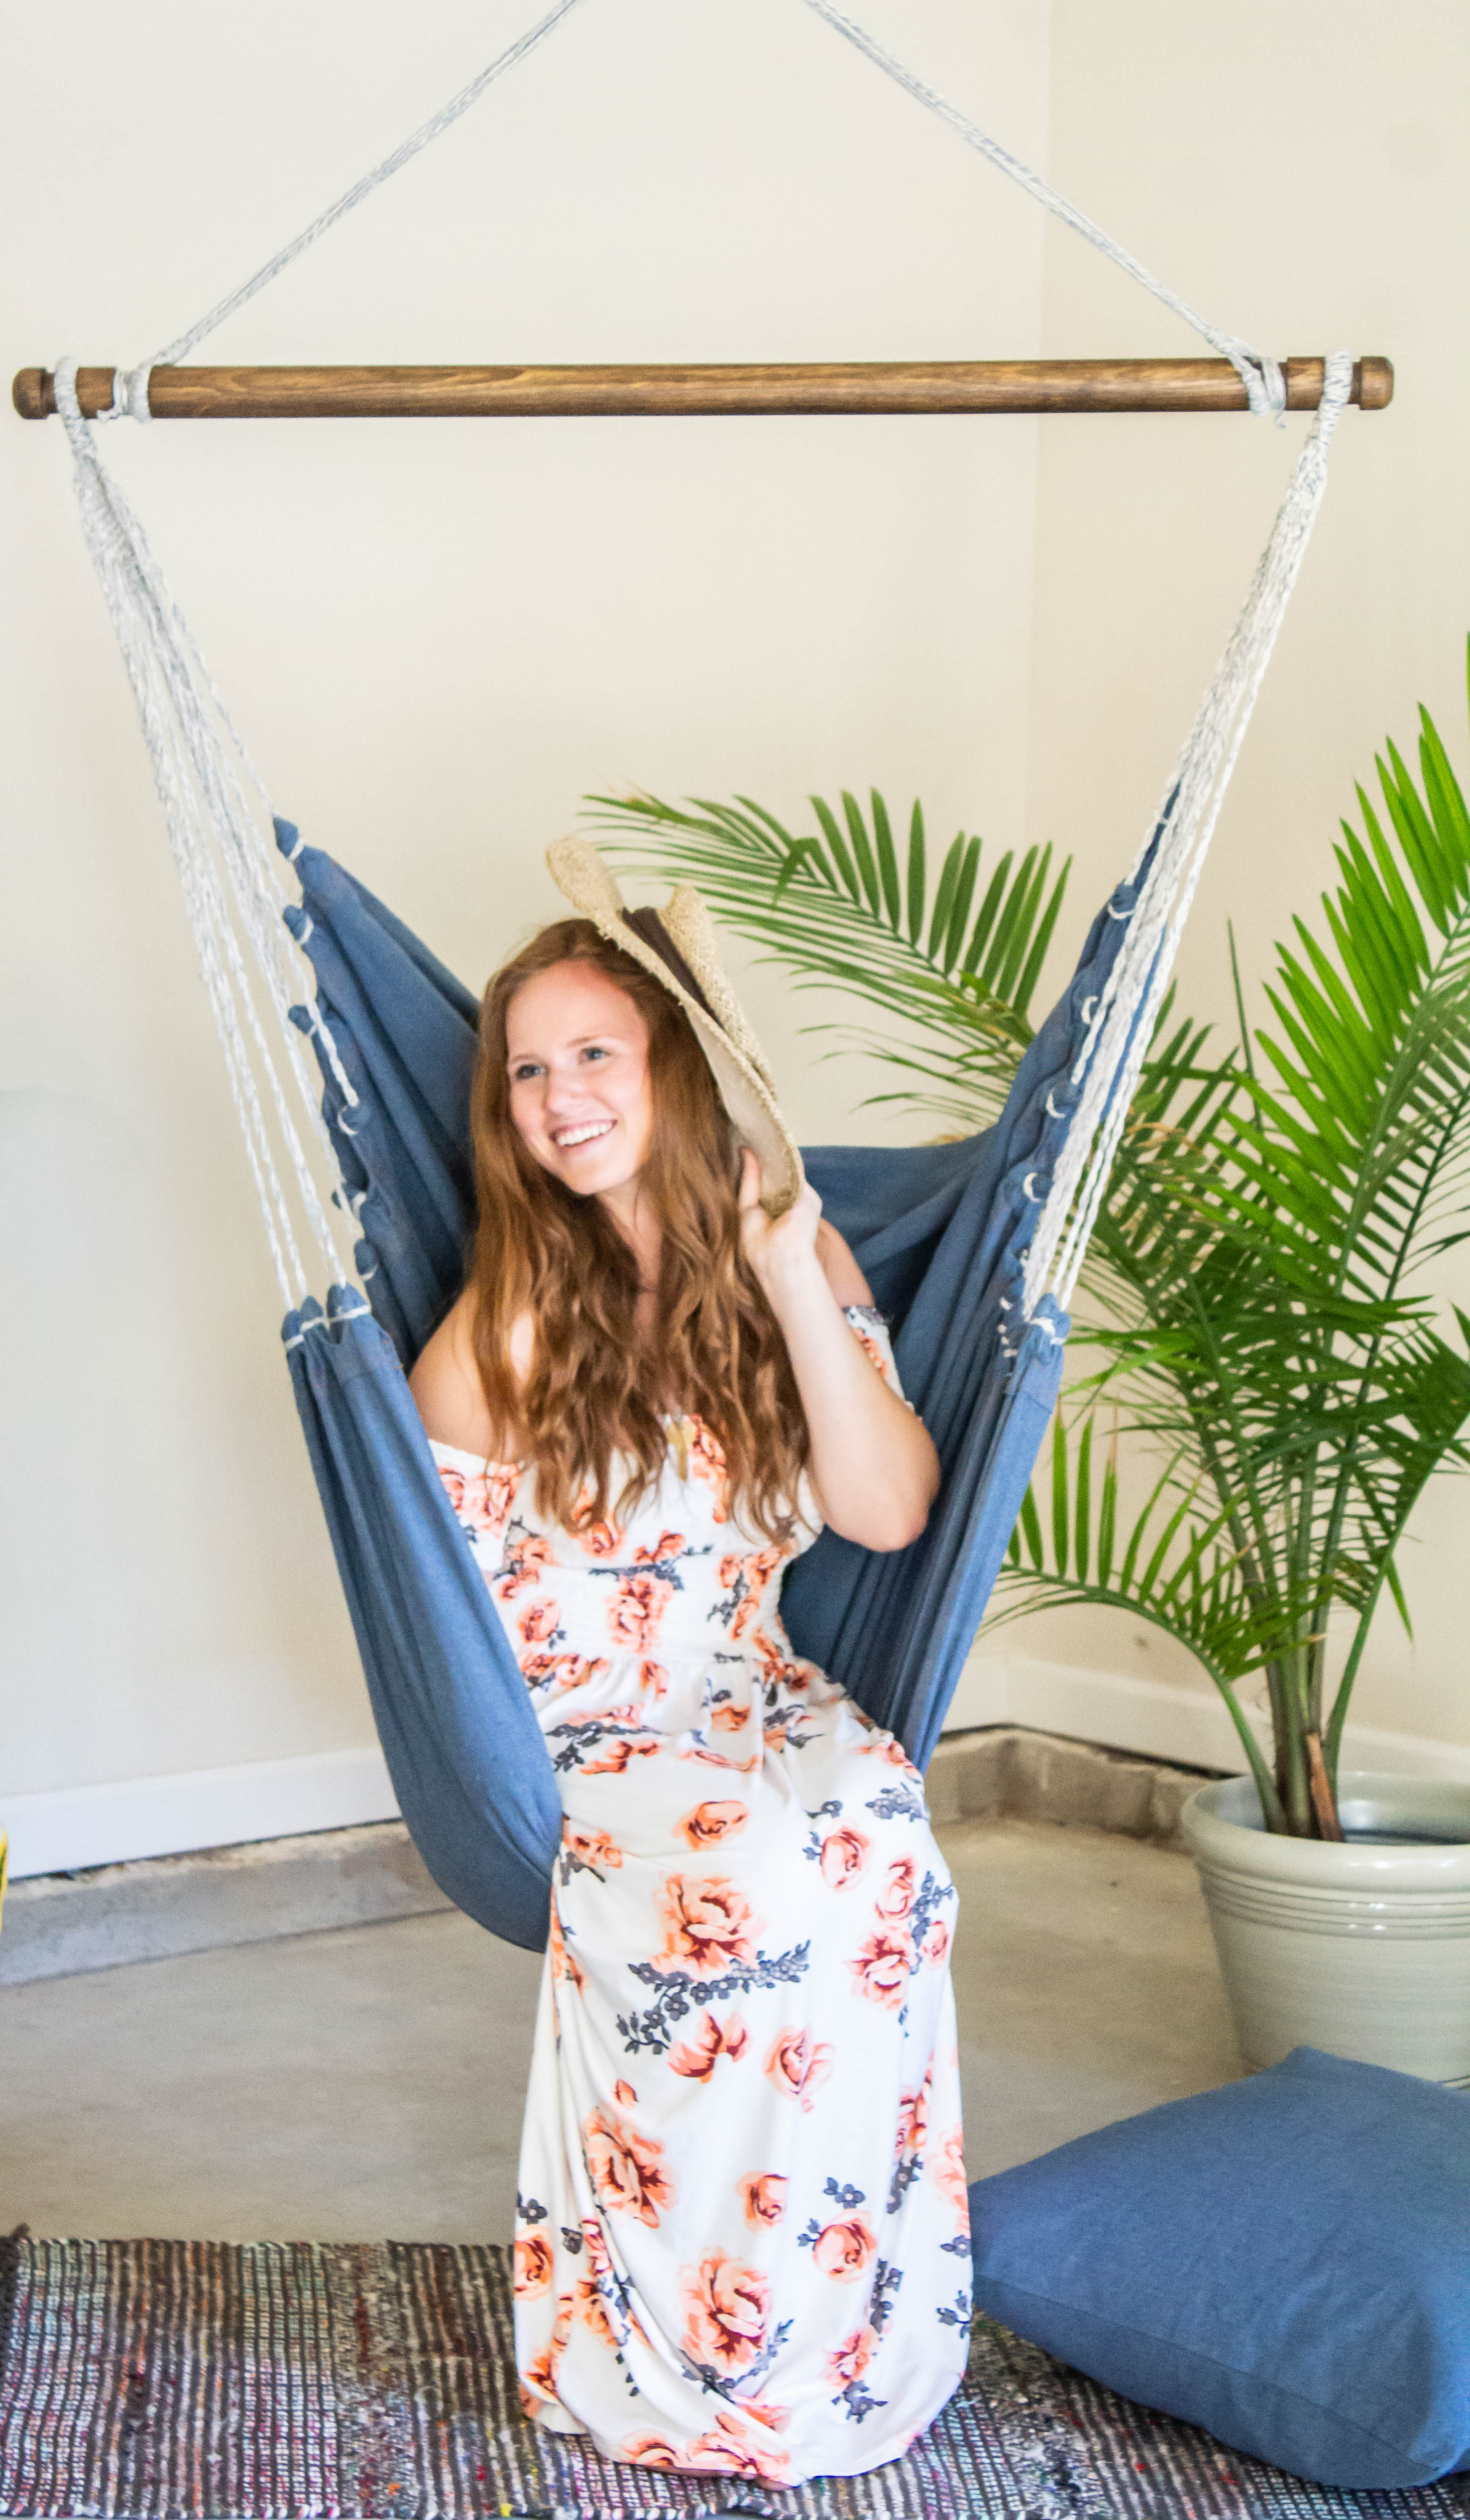 denim indoor hammock swing chair